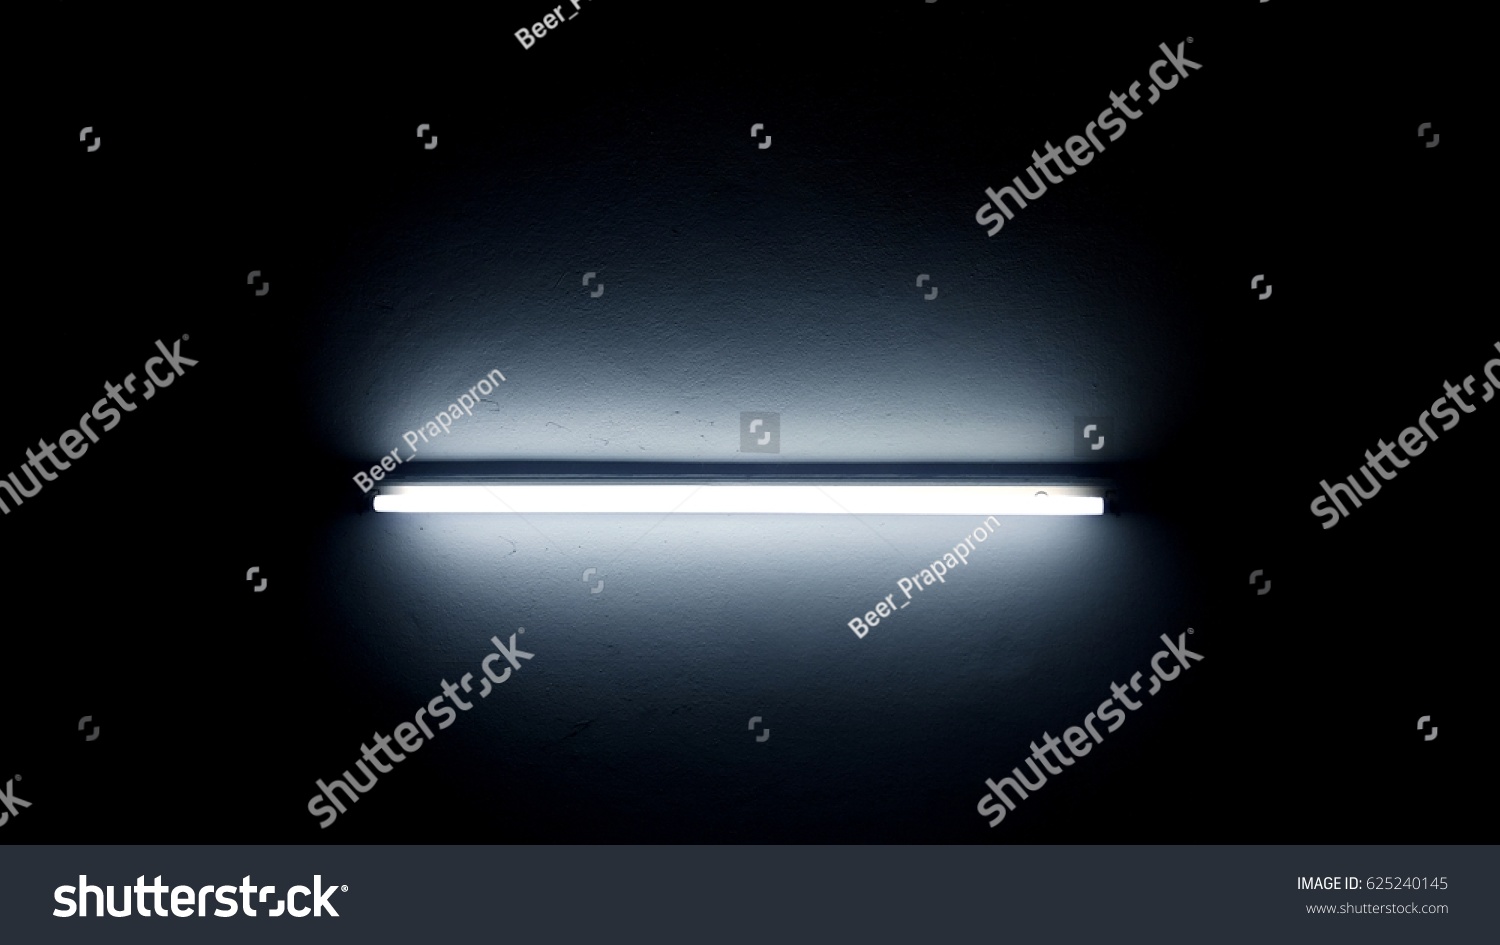 Neon light in dark room #625240145